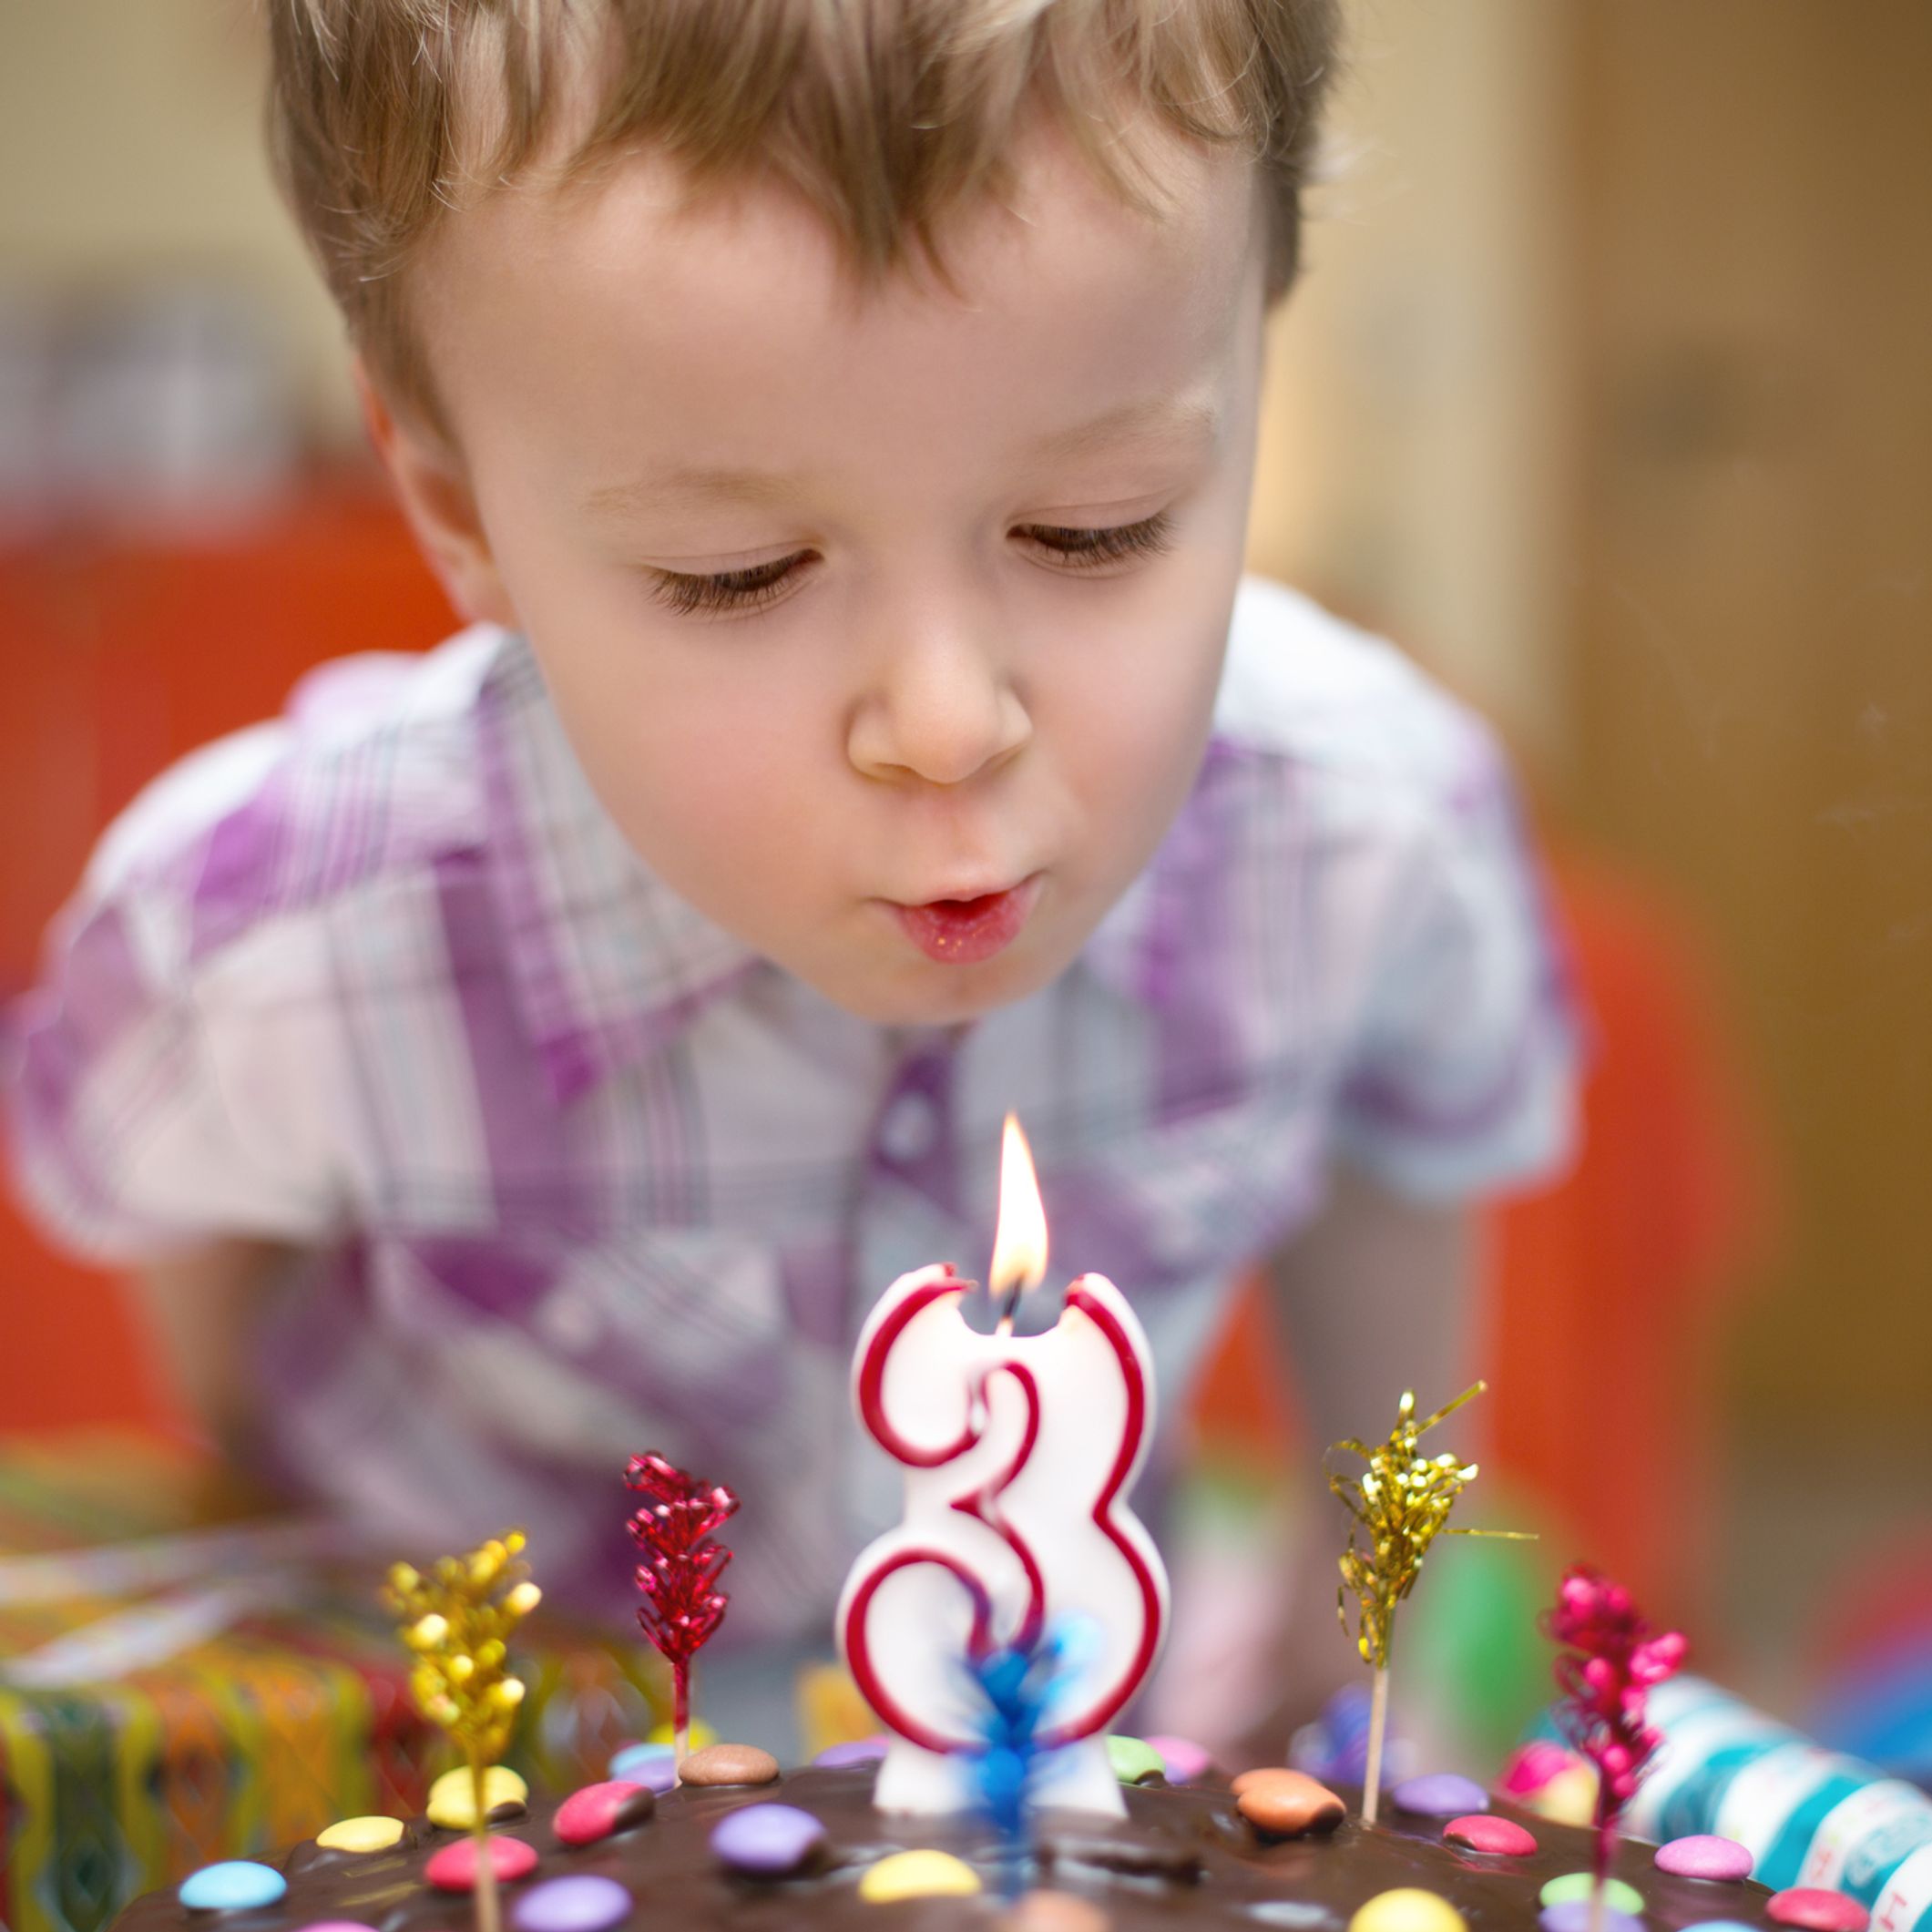 Mon enfant fête ses 3 ans : nos idées pour une fête réussie !